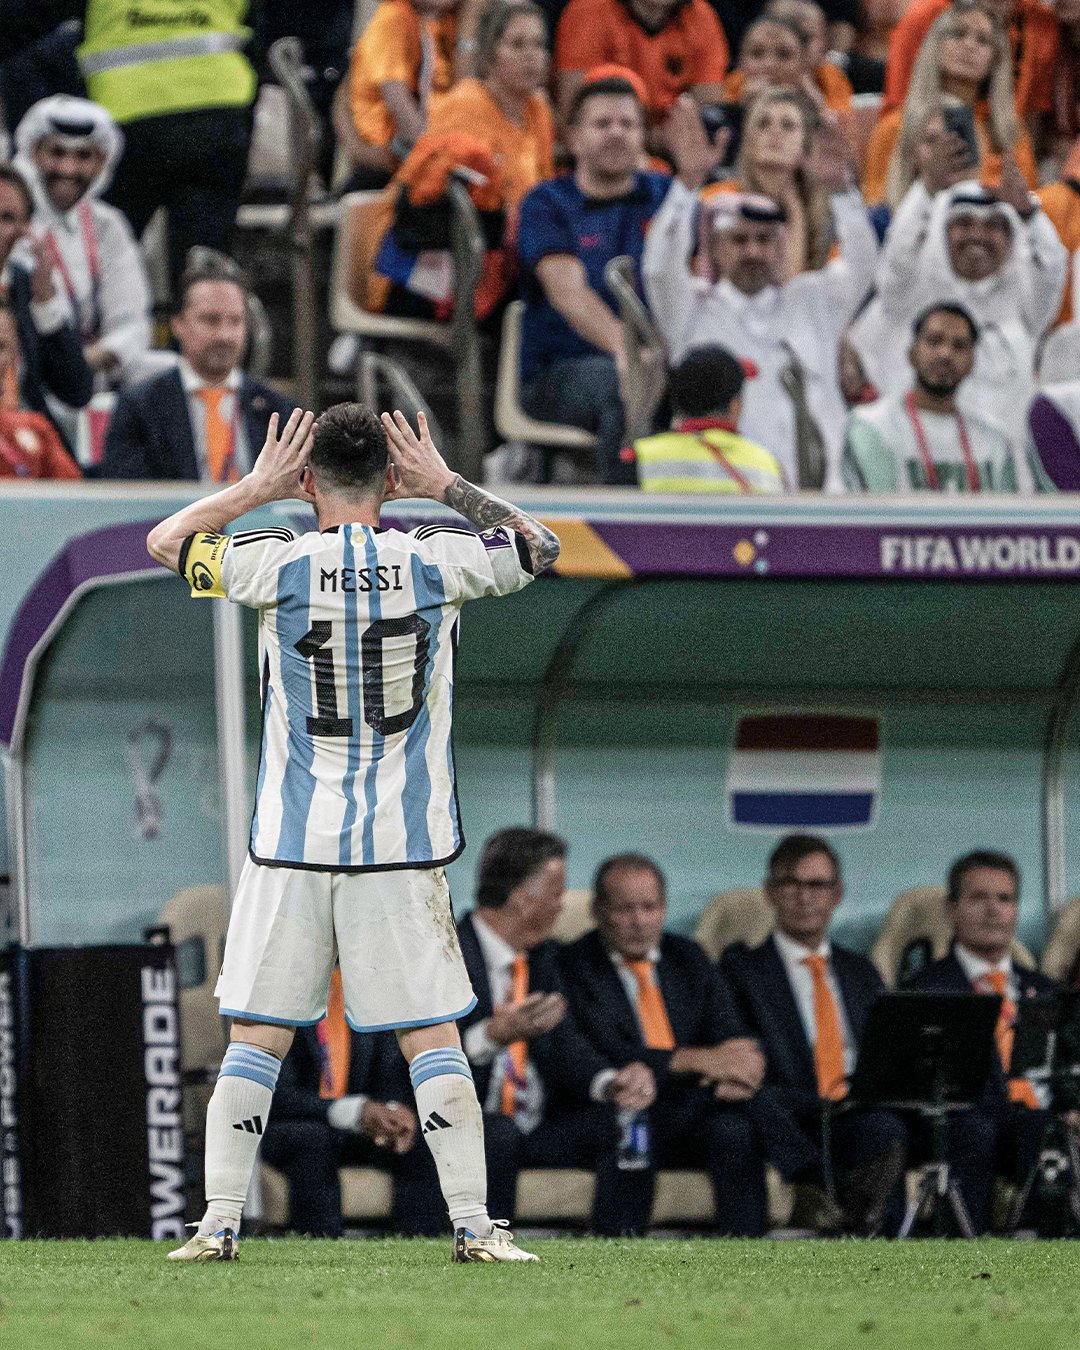 Khung hình chiếc cúp đang được đưa lên cao, bao trùm bởi không khí hân hoan của đồng đội cùng người hâm mộ, và trong lòng sân, Messi đang ăn mừng chiến thắng trong niềm vui sướng mãn nguyện! Hãy chiêm ngưỡng ảnh Messi ăn mừng để cảm nhận niềm hạnh phúc đó như thế nào nhé!